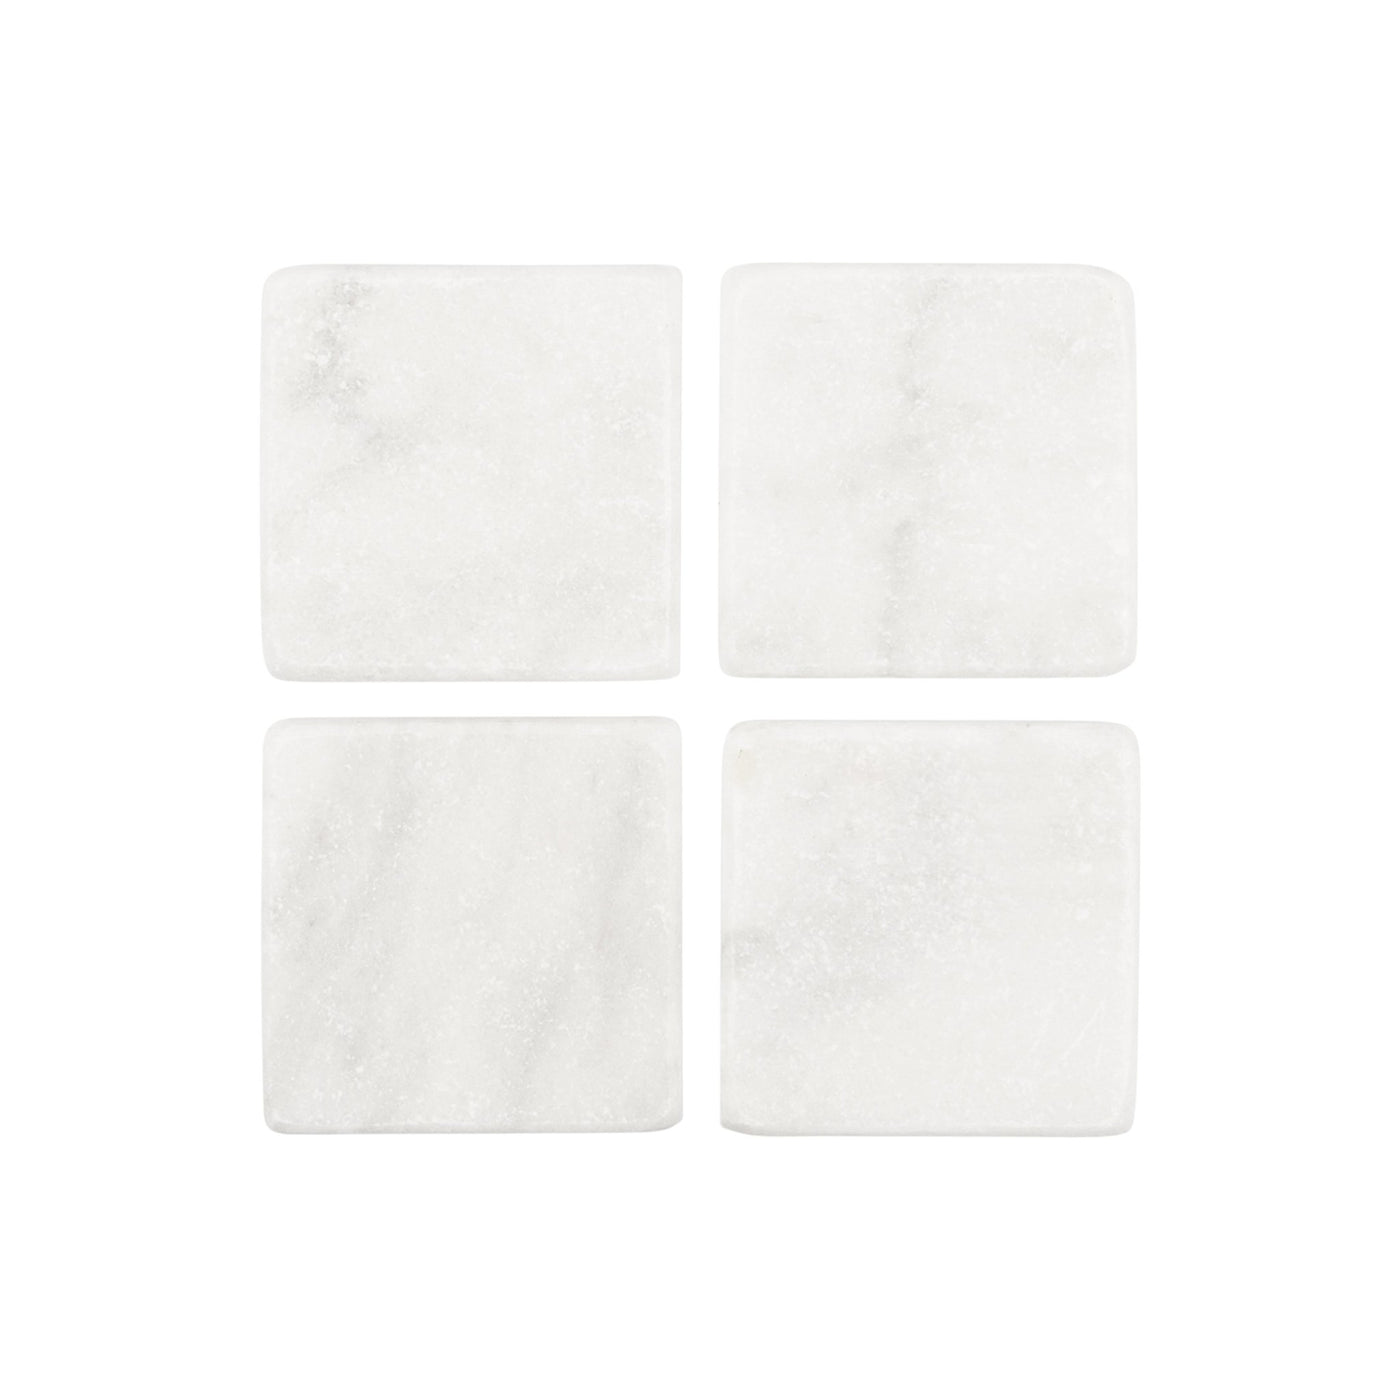 Stoned Marble Marmor-Untersetzer Set mit 4 Stück, Quadratisch wahlweise in Schwarz poliert oder Weiß matt ca. L10xB10xH1cm - Bitangel RENOVATE & FURNISH HOMES GmbH